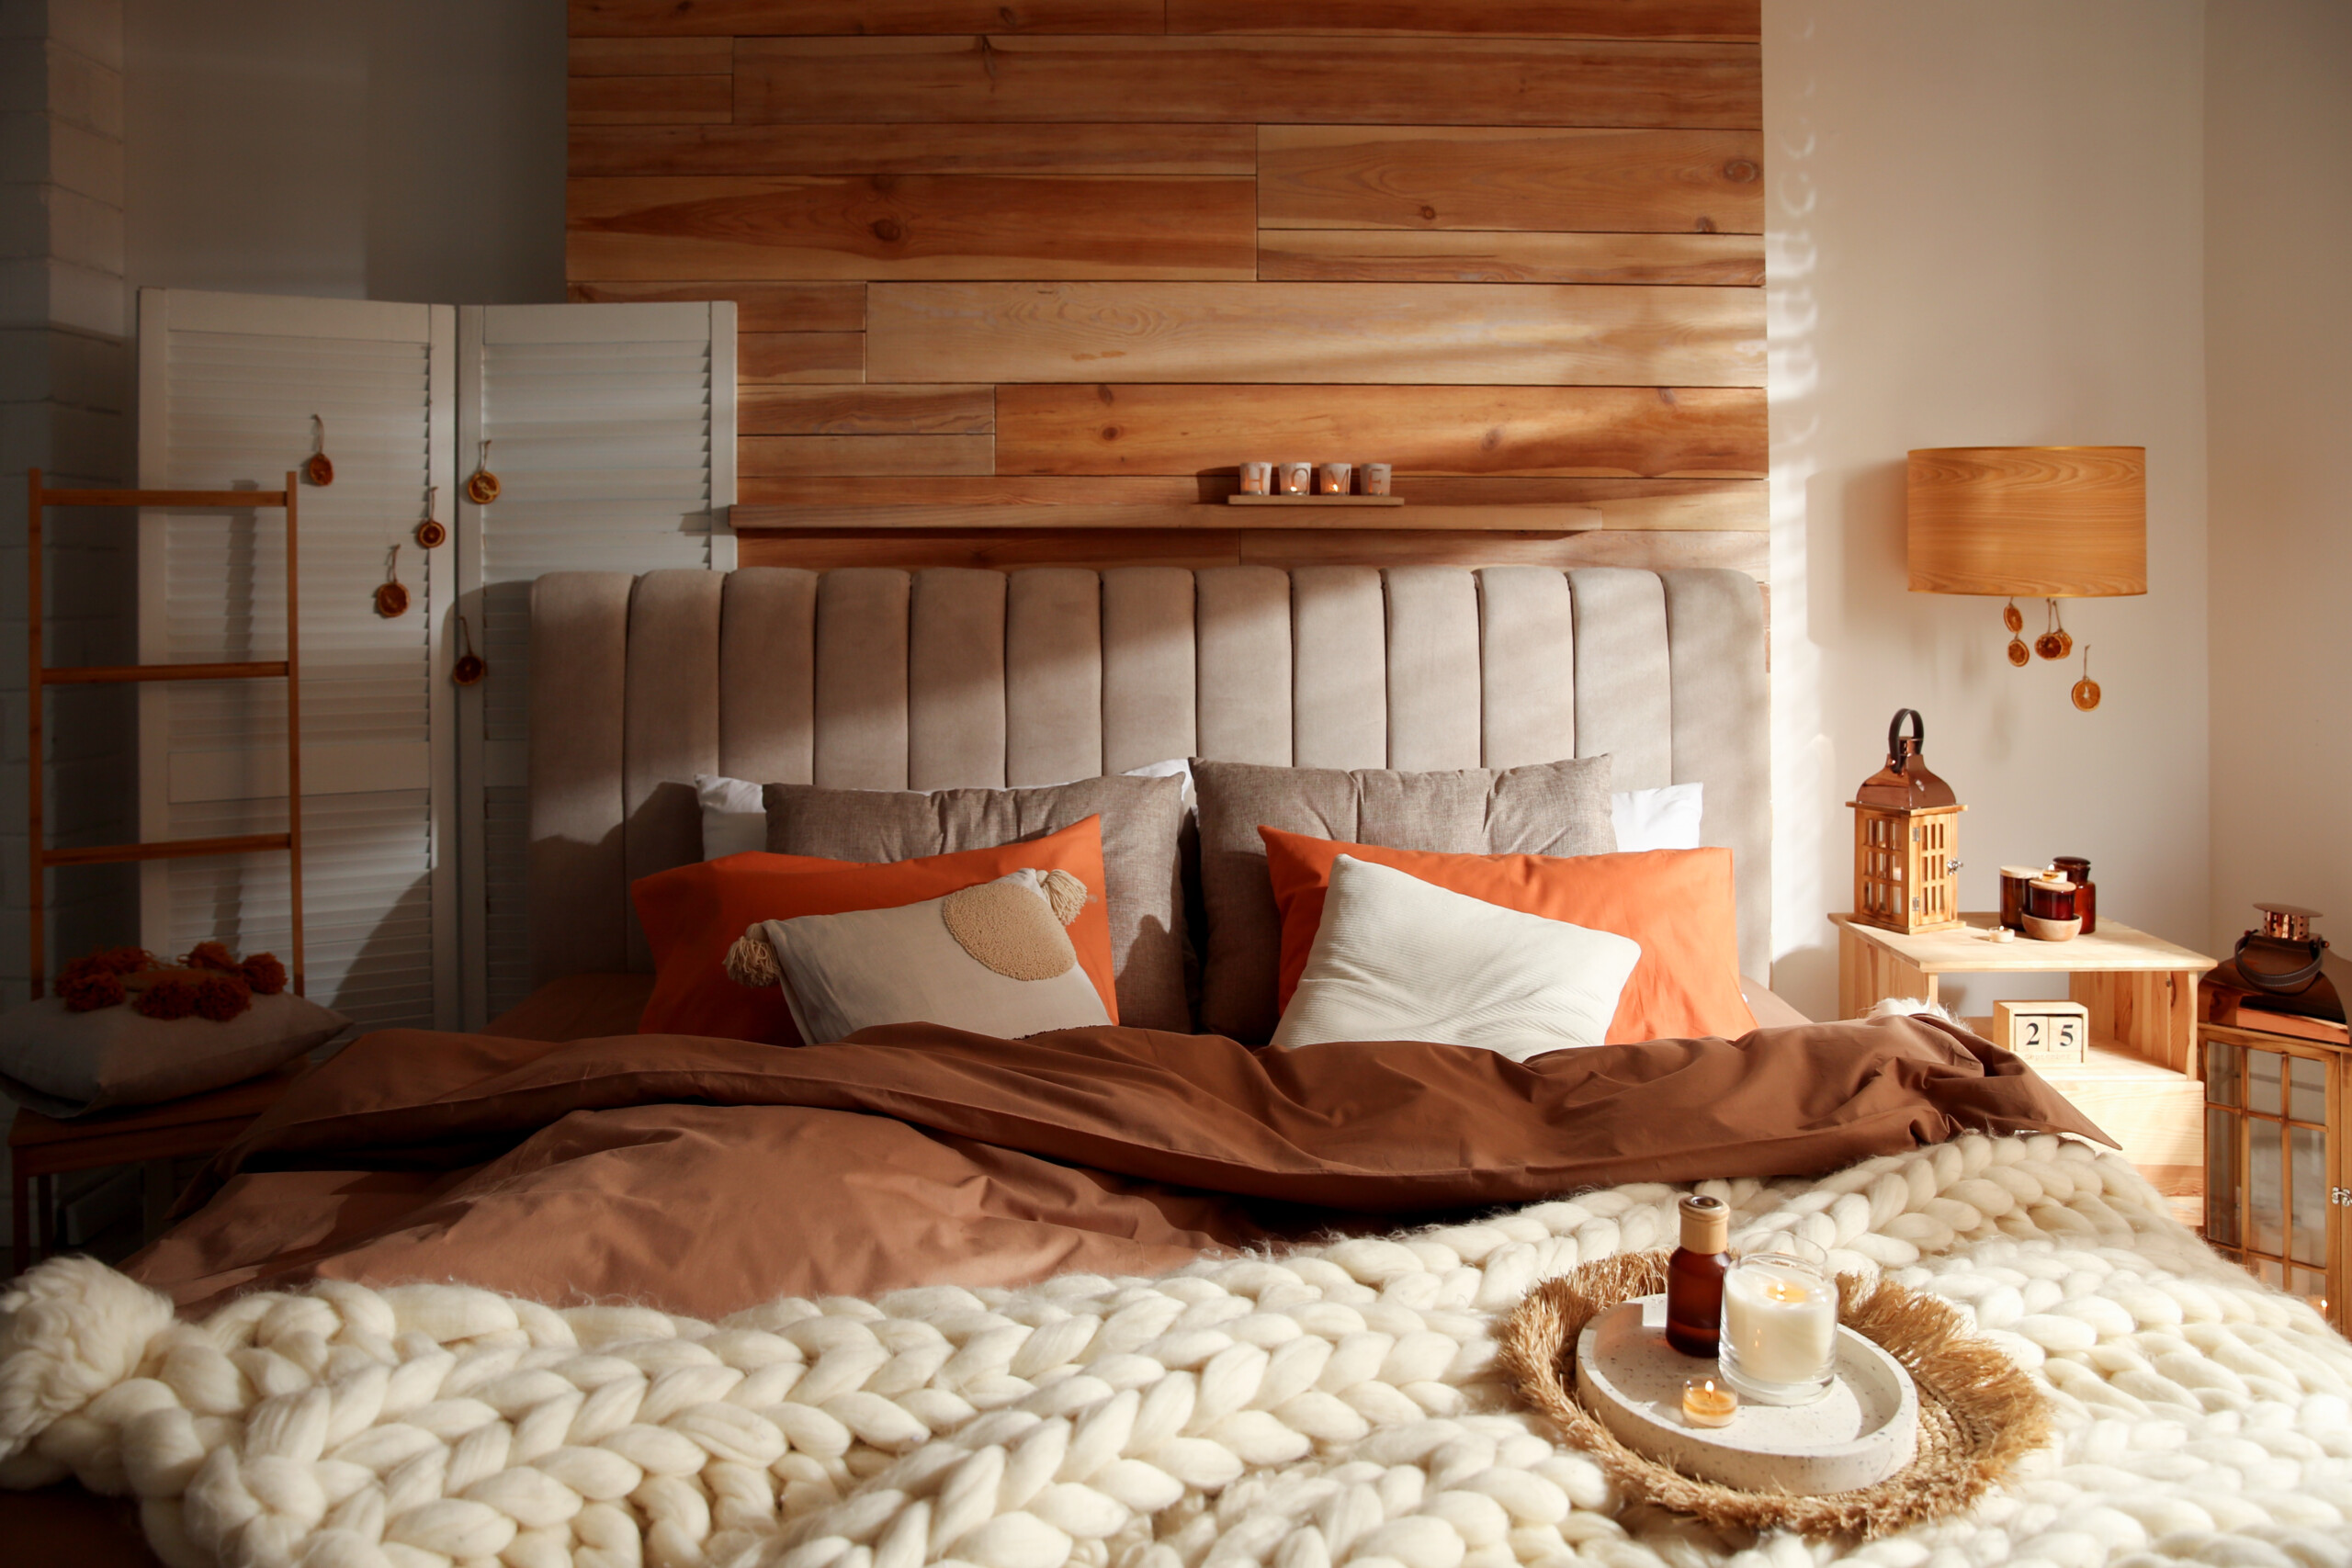 Cozy Autumn Bedroom Decor